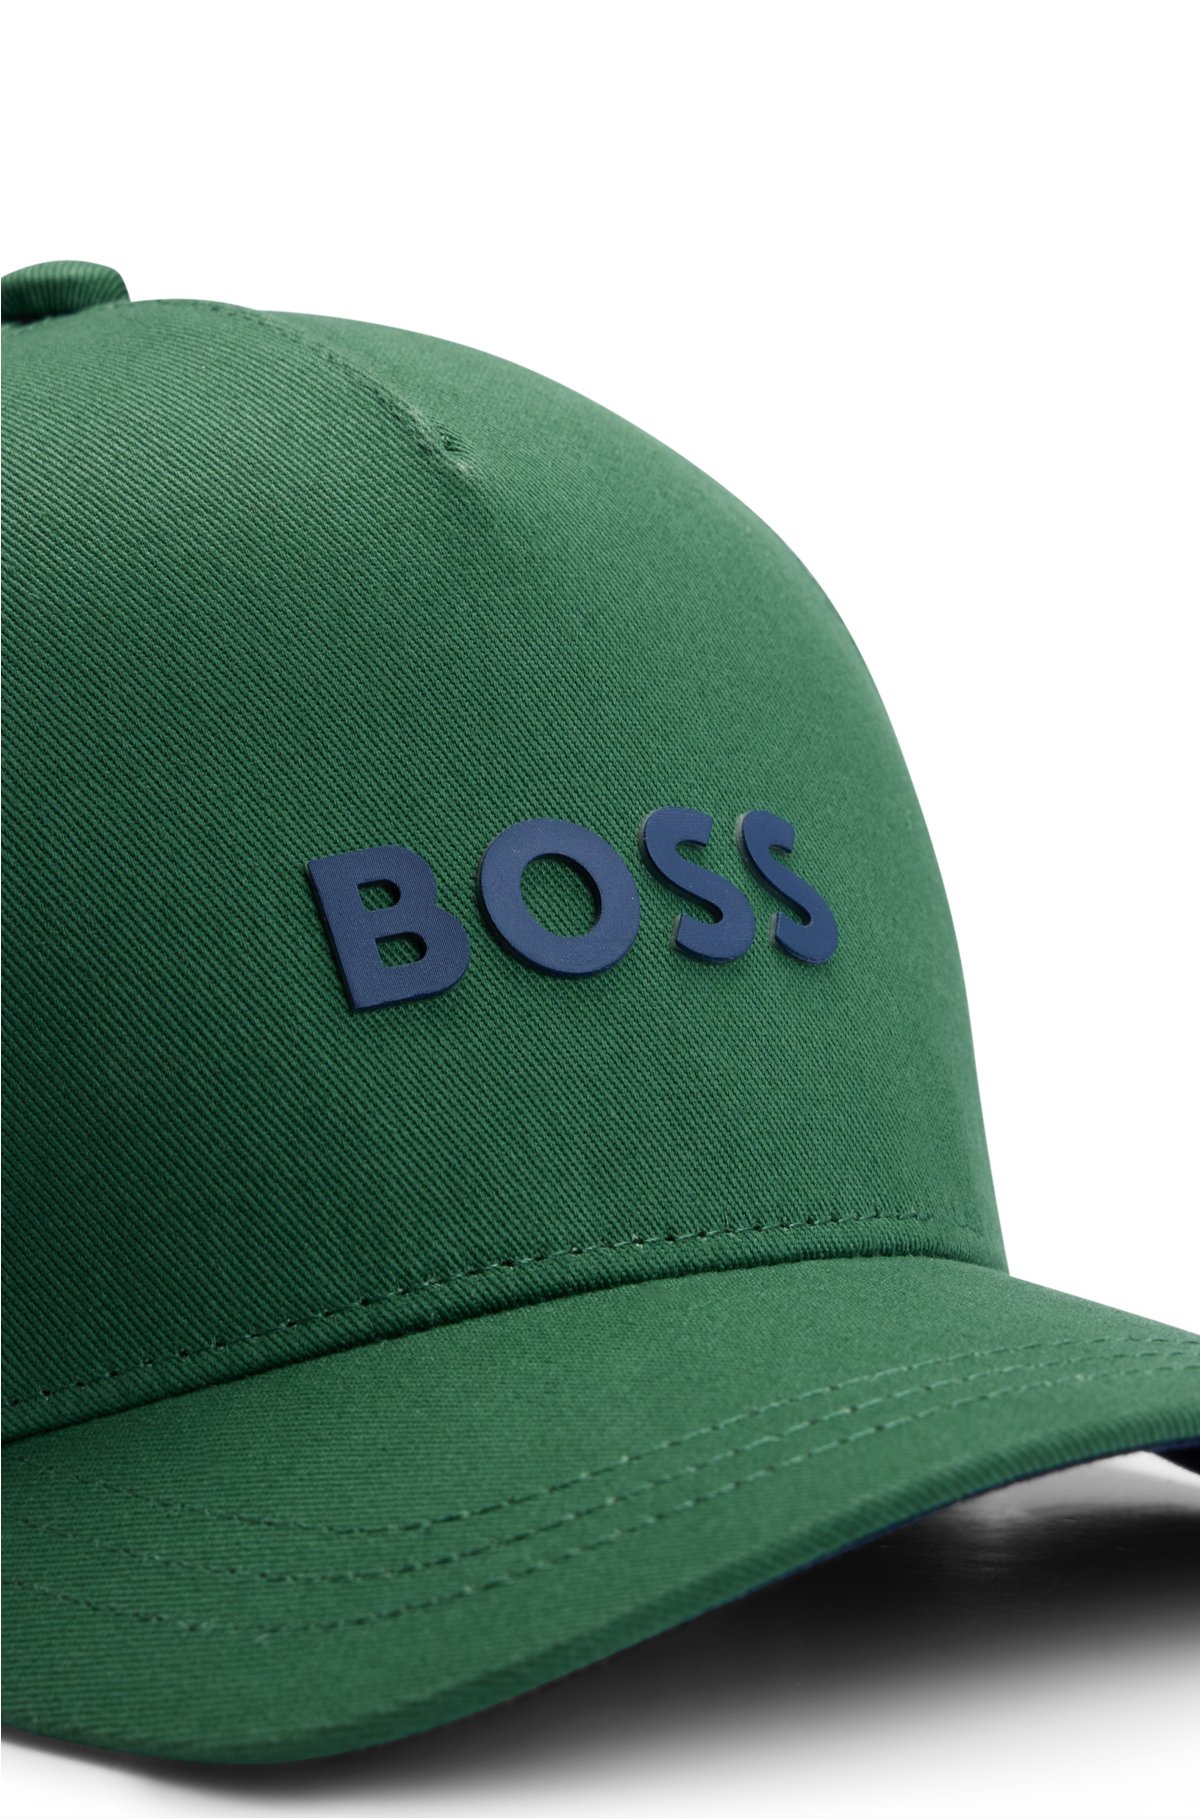 Kids' cap in cotton twill with logo details, Dark Green